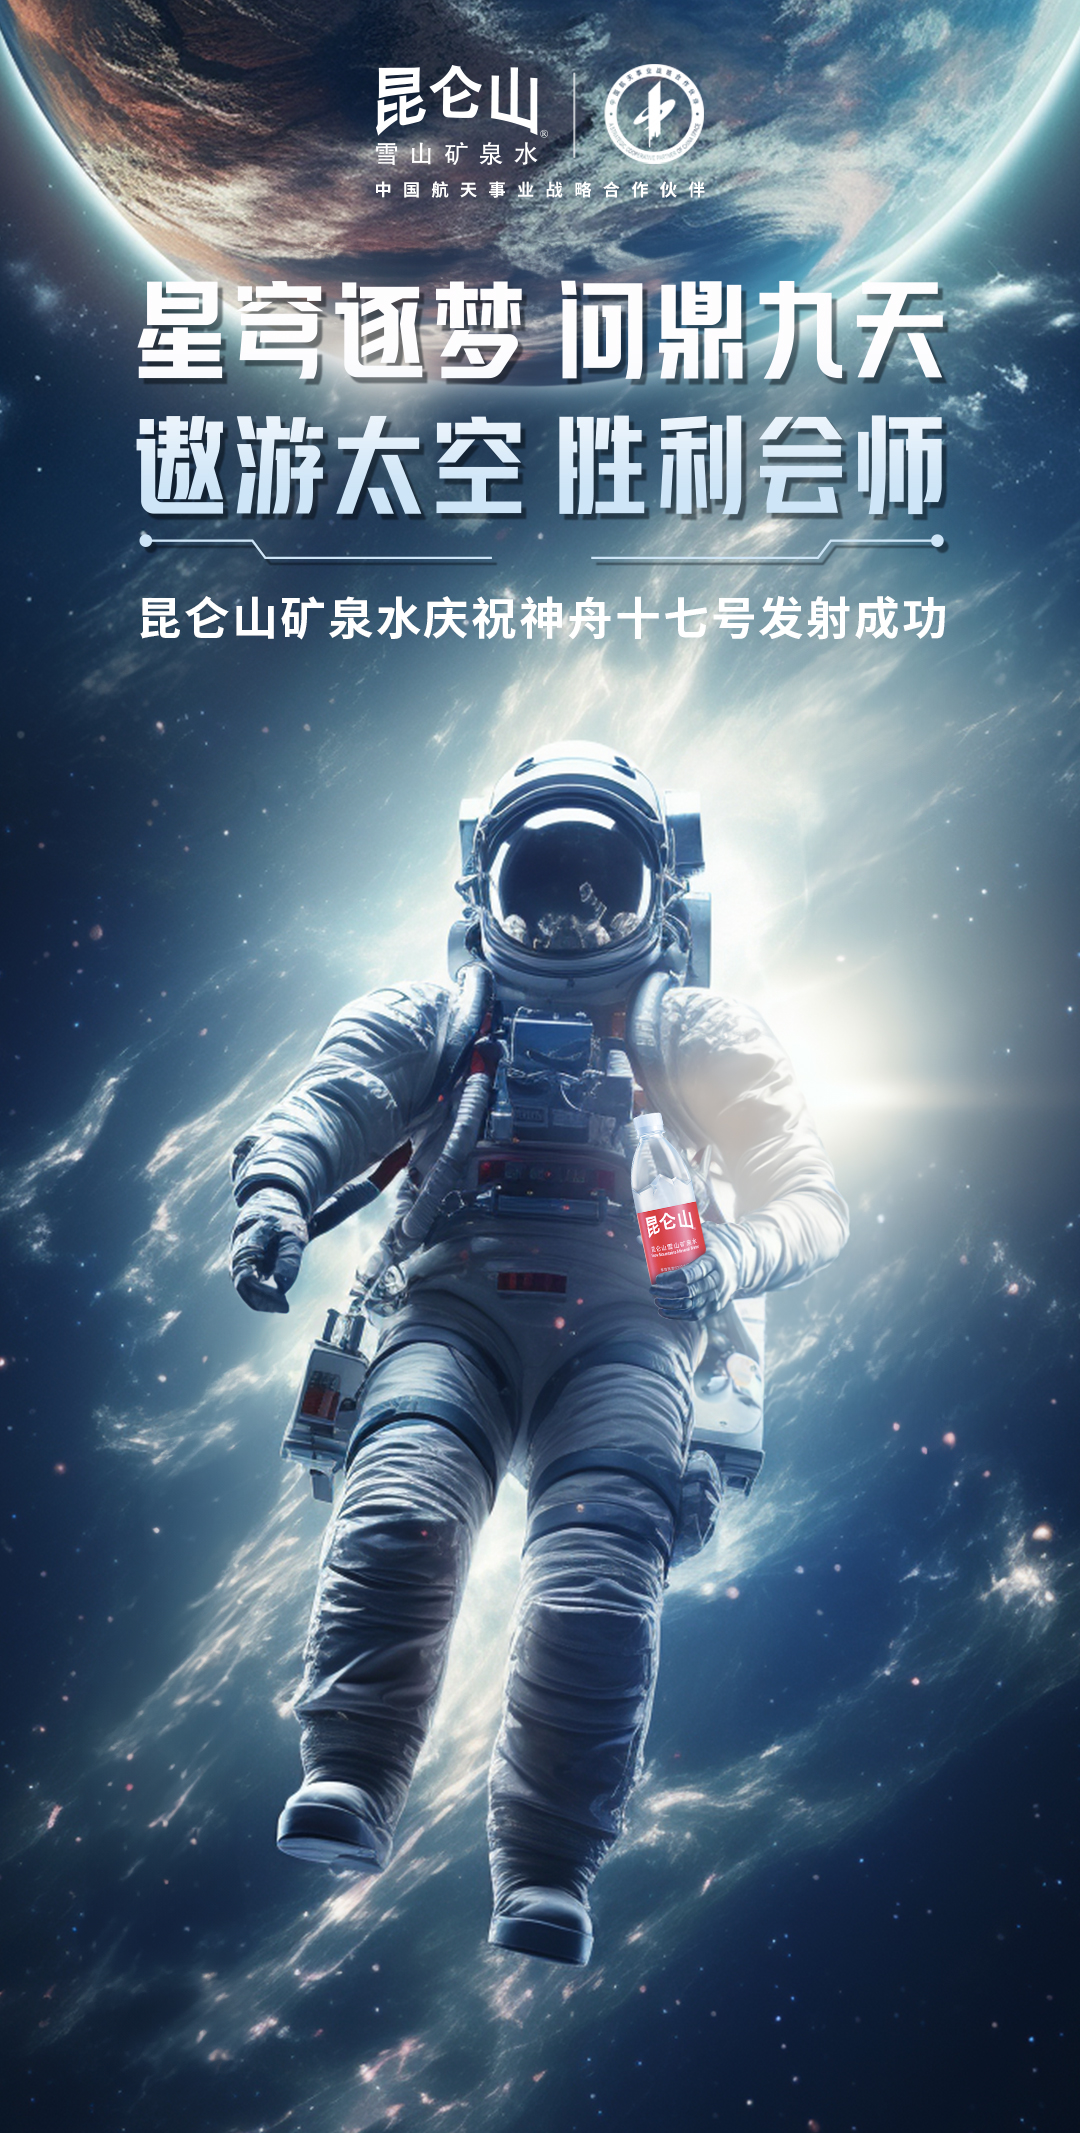 中国航天事业战略合作伙伴昆仑山矿泉水见证“神十七”发射成功！